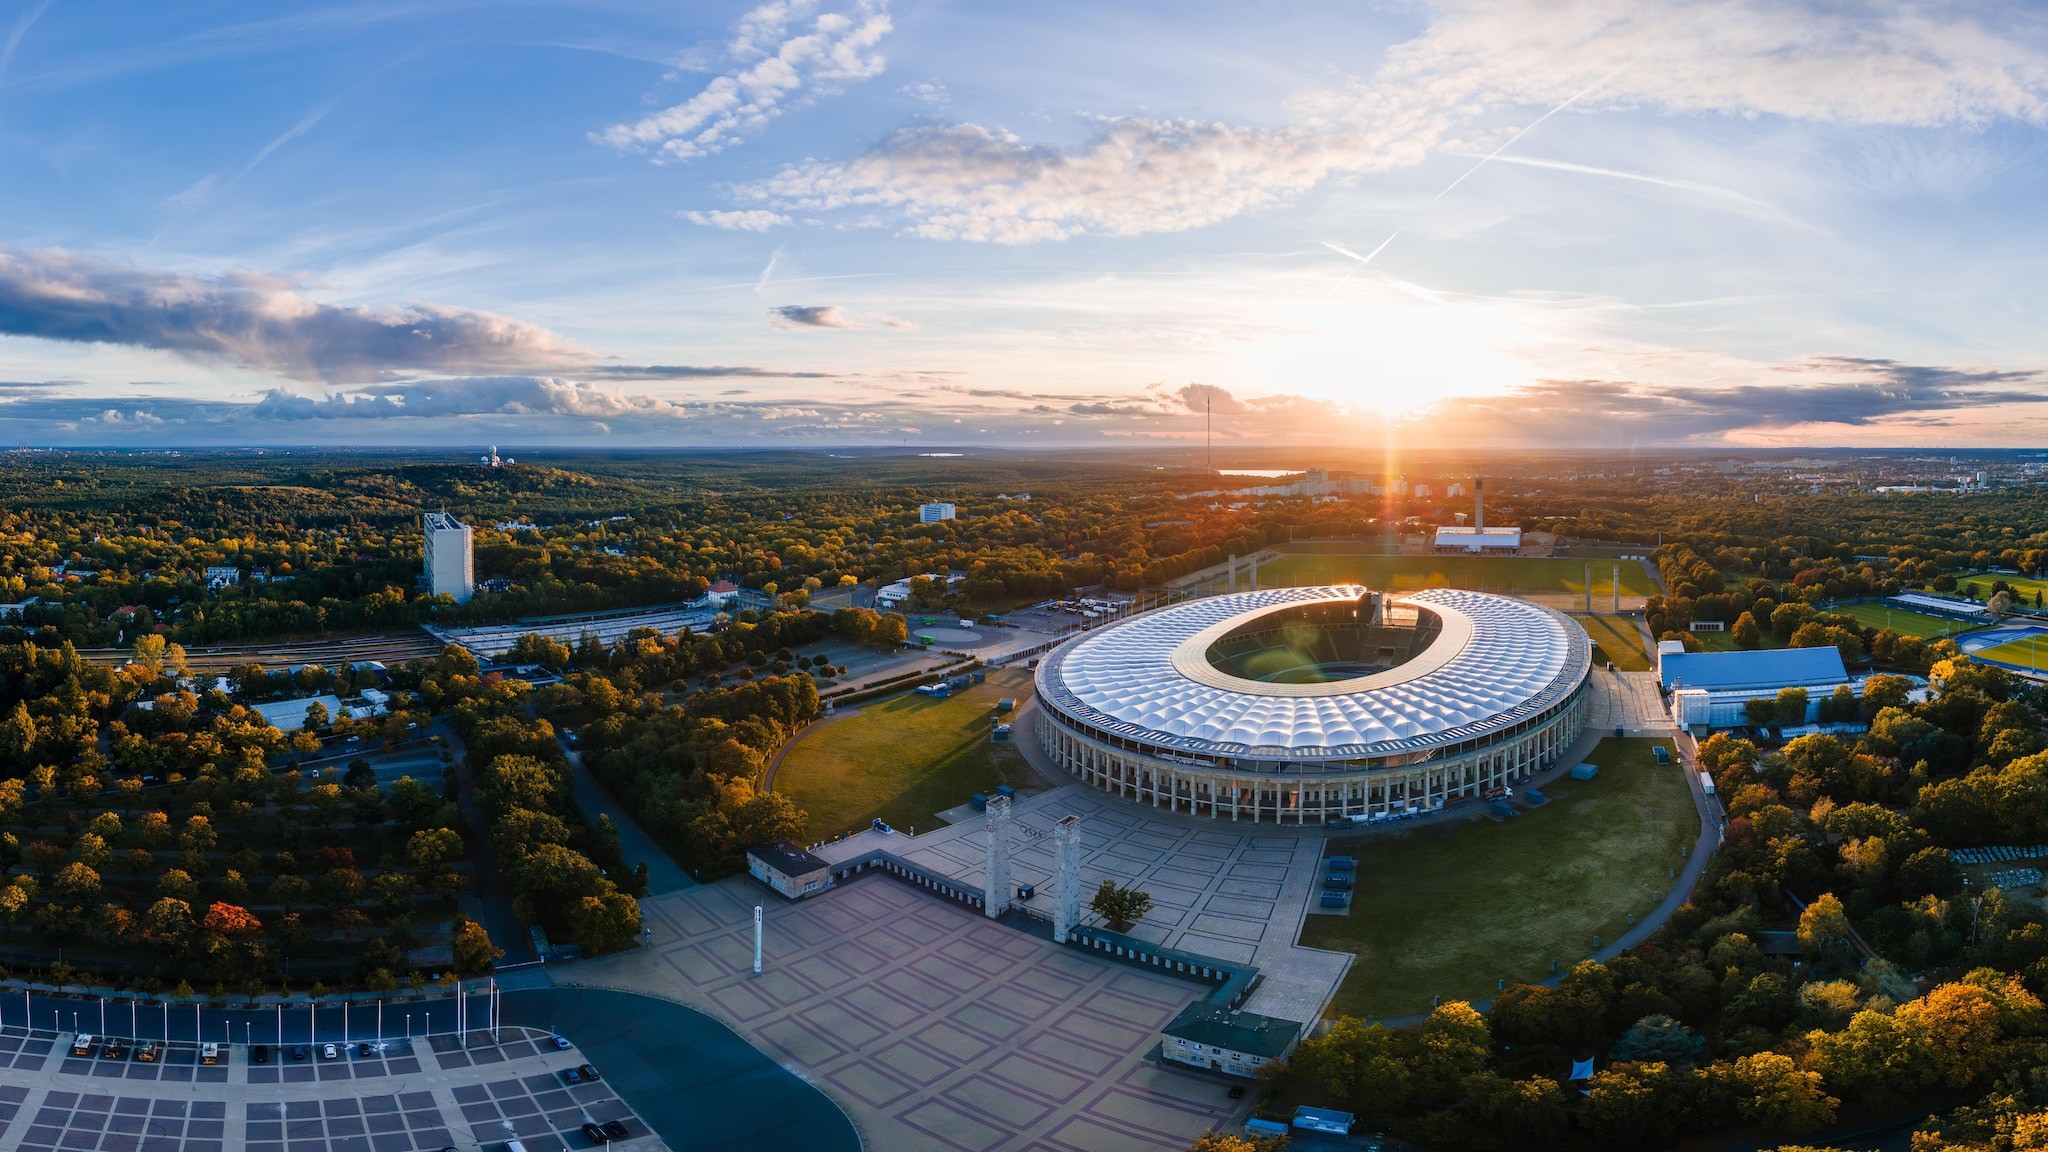 Không chỉ là nơi tổ chức các sự kiện thể thao đỉnh cao, sân vận động Olympiastadion ở thủ đô Berlin của Đức còn chứng kiến những sự kiện lịch sử đầy kịch tính và cảm xúc, từ Thế vận hội 1936 (Summer Olympics 1936) đến FIFA World Cup 2006.